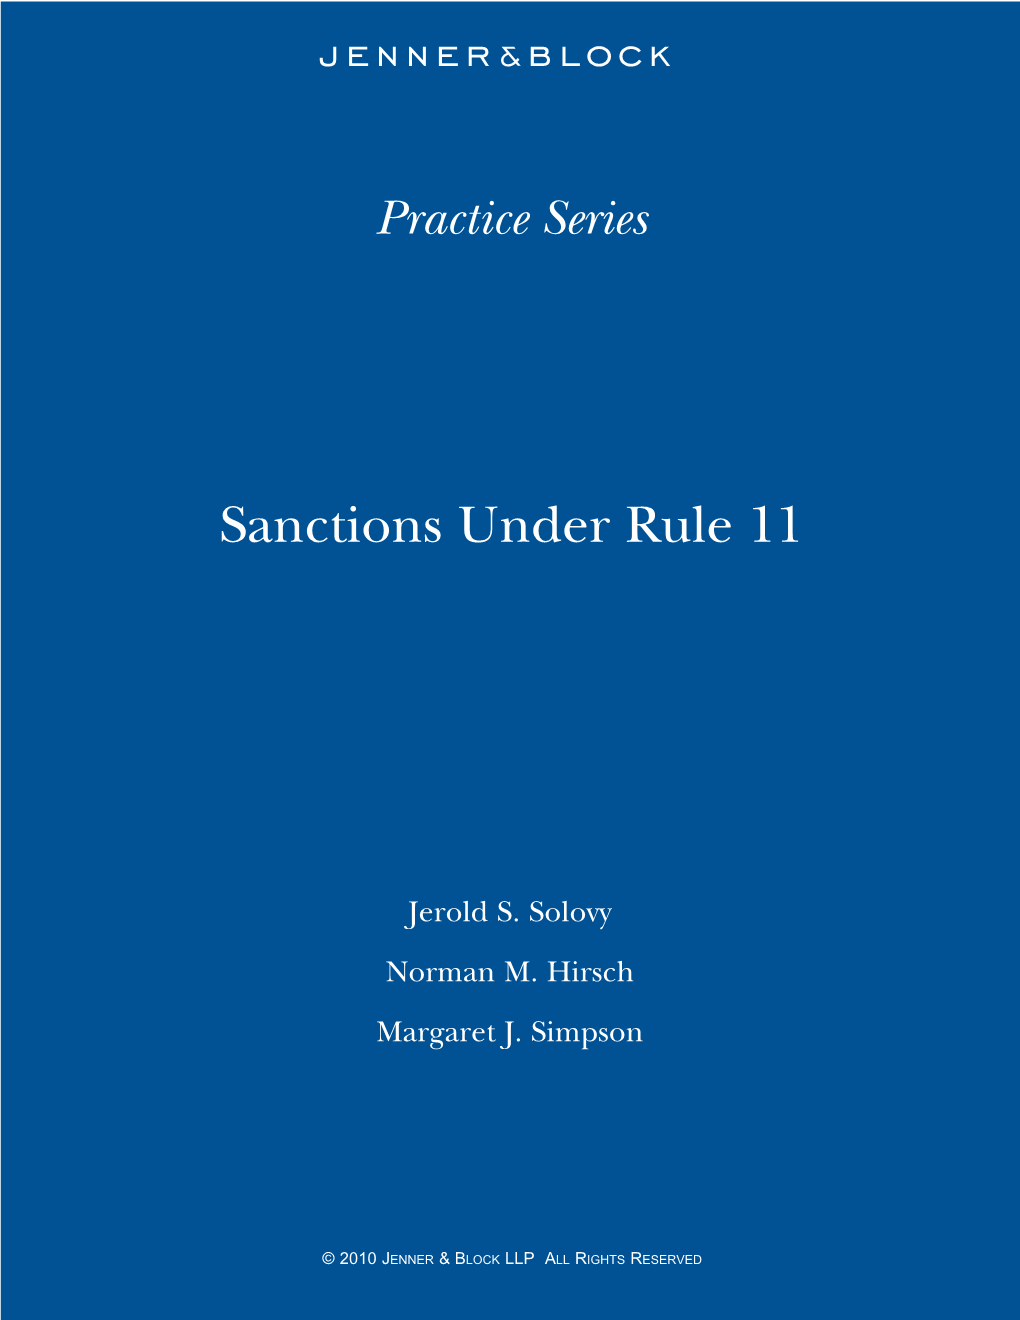 Sanctions Under Rule 11